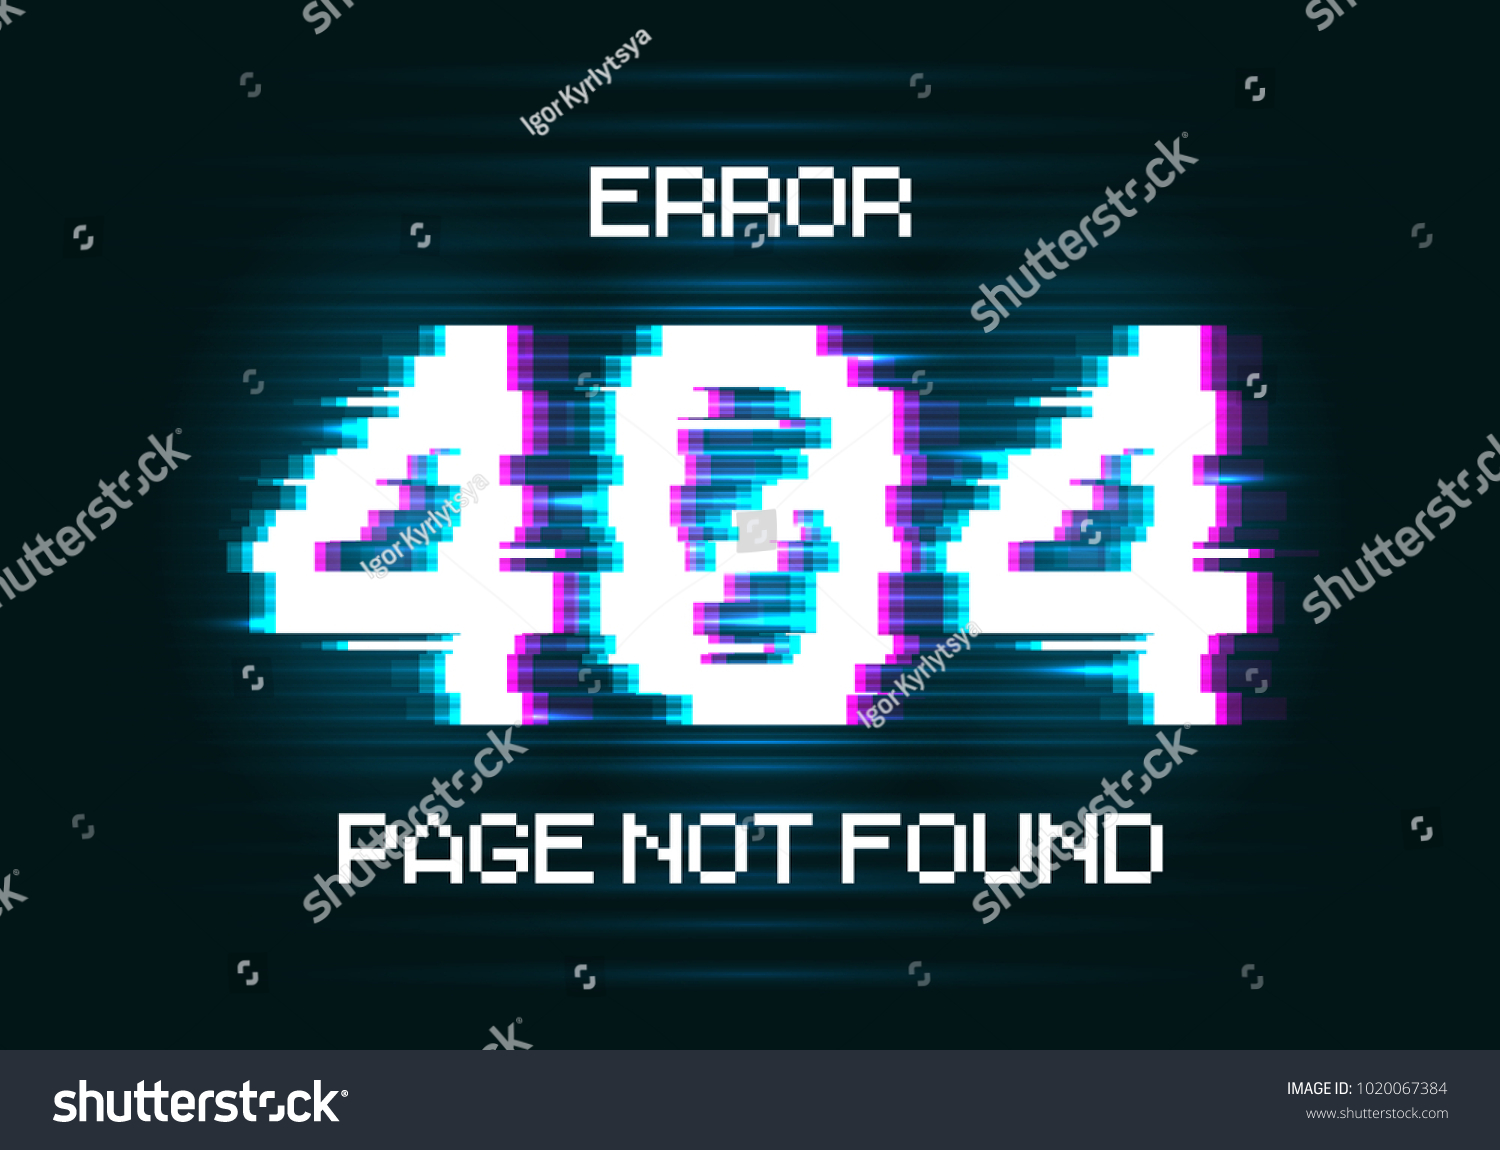 Error 404 стим фото 60